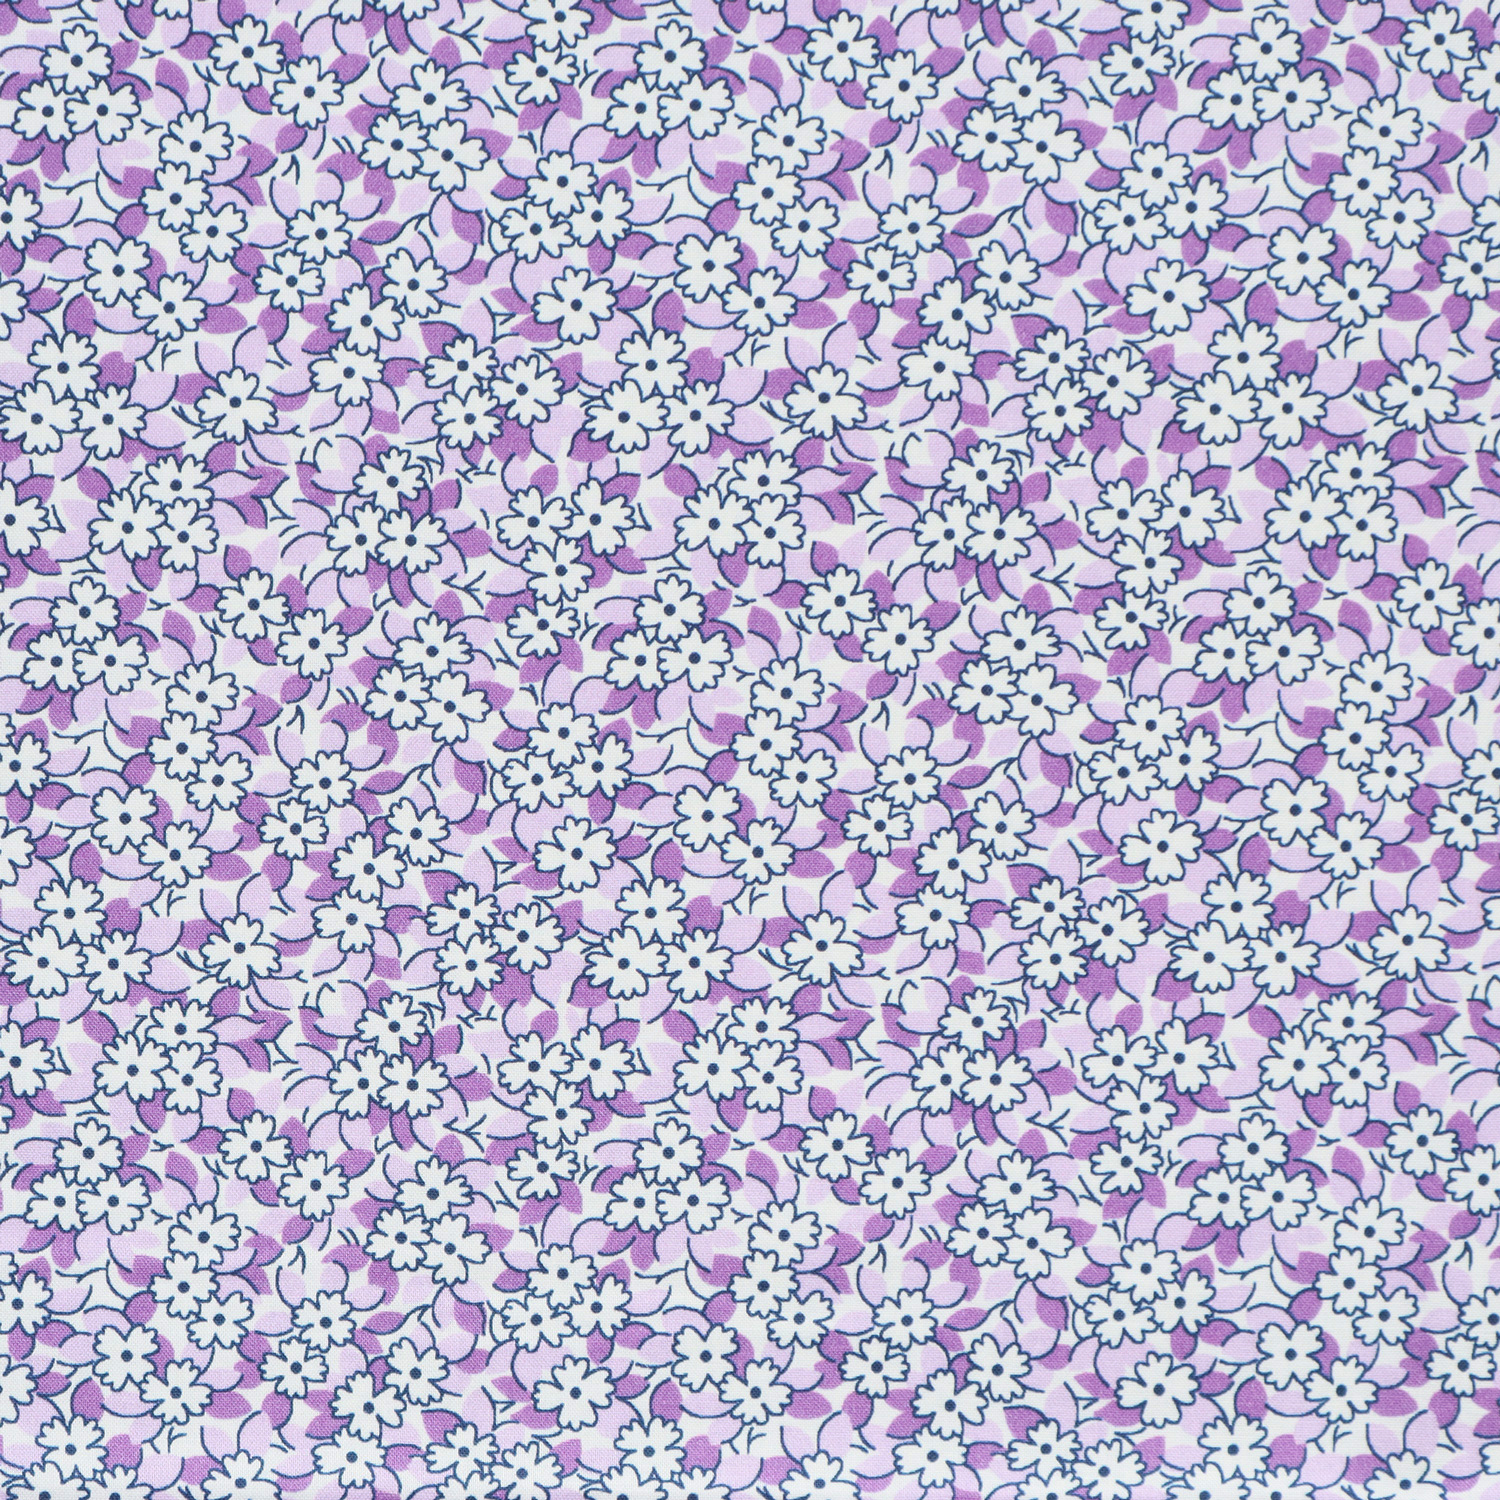 【0615新柄】  ADZ20492-23 ROBERT-KAUFMAN ロバート・カフマン パープル地 ホワイト極小花柄  USAプリント m単位 (m)